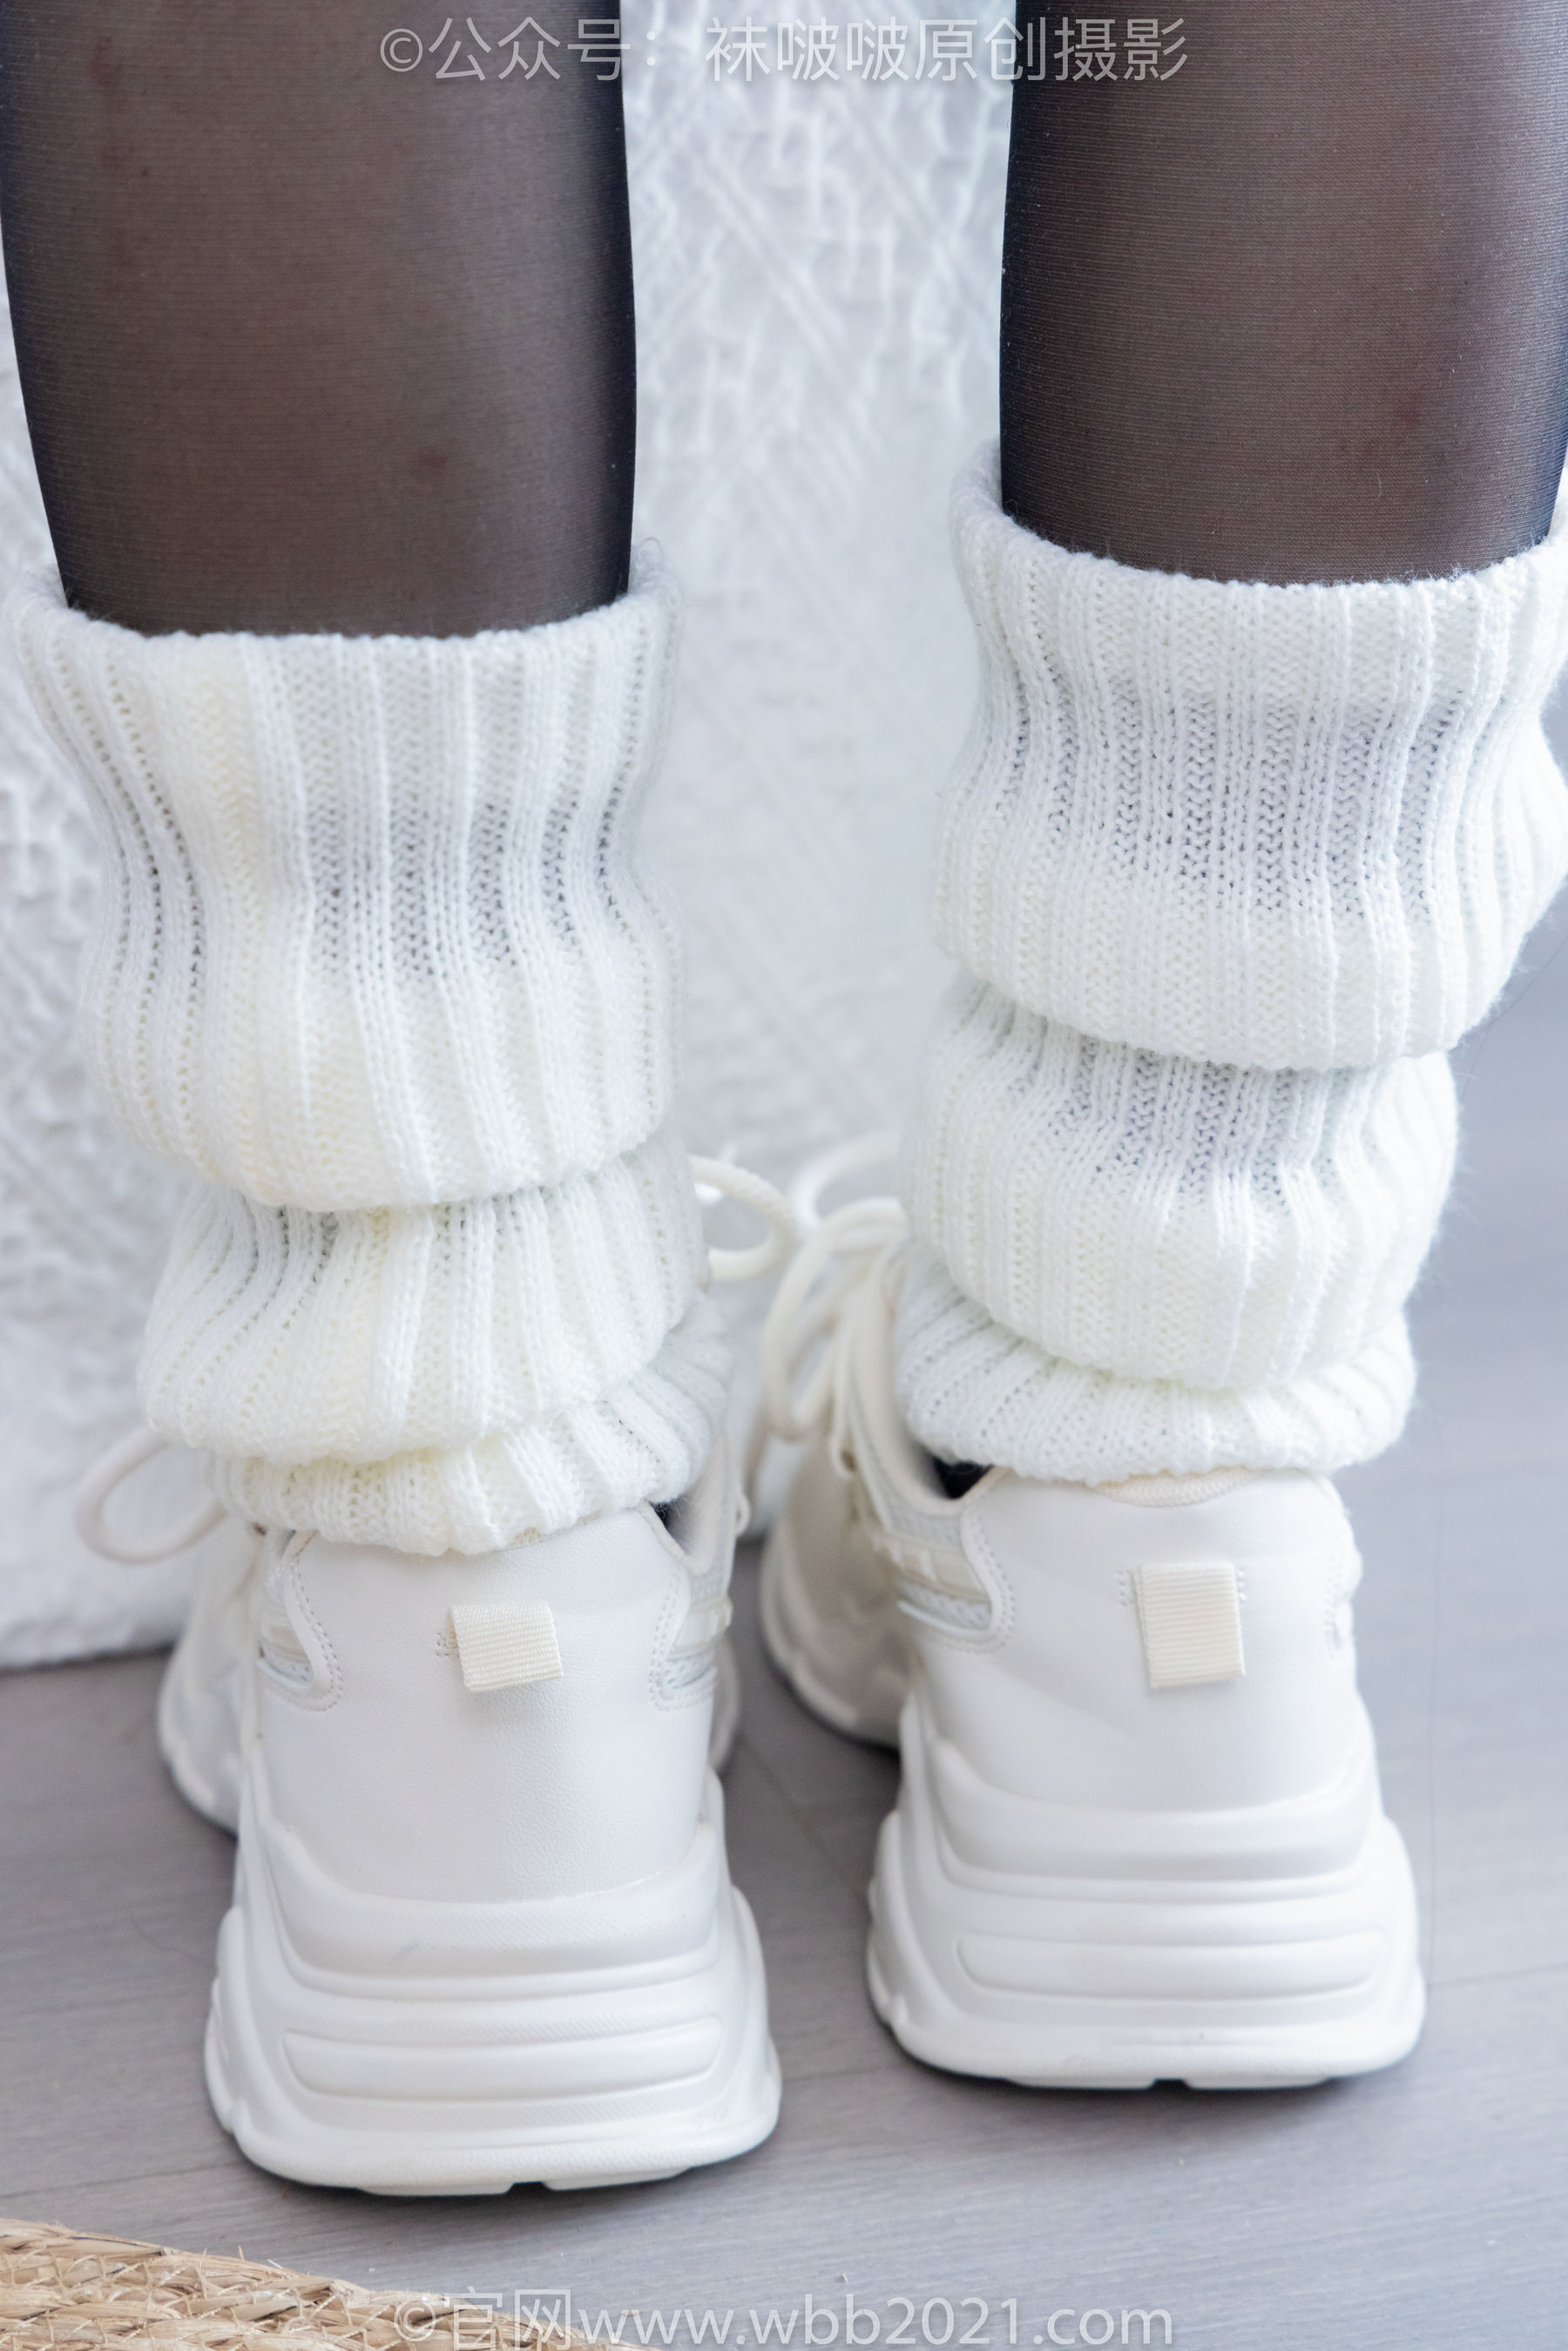 BoBoSocks袜啵啵 No.335 甜甜圈 -校服、运动鞋、薄黑丝、袜套/(154P)